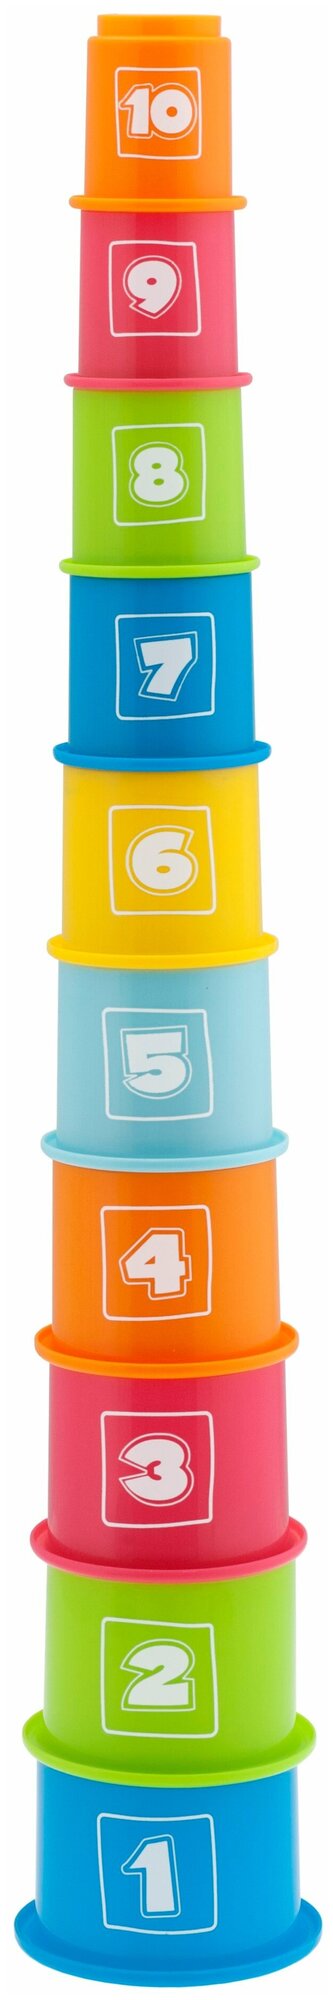 Развивающая игрушка Chicco Занимательная пирамидка с цифрами, 10 дет., разноцветный